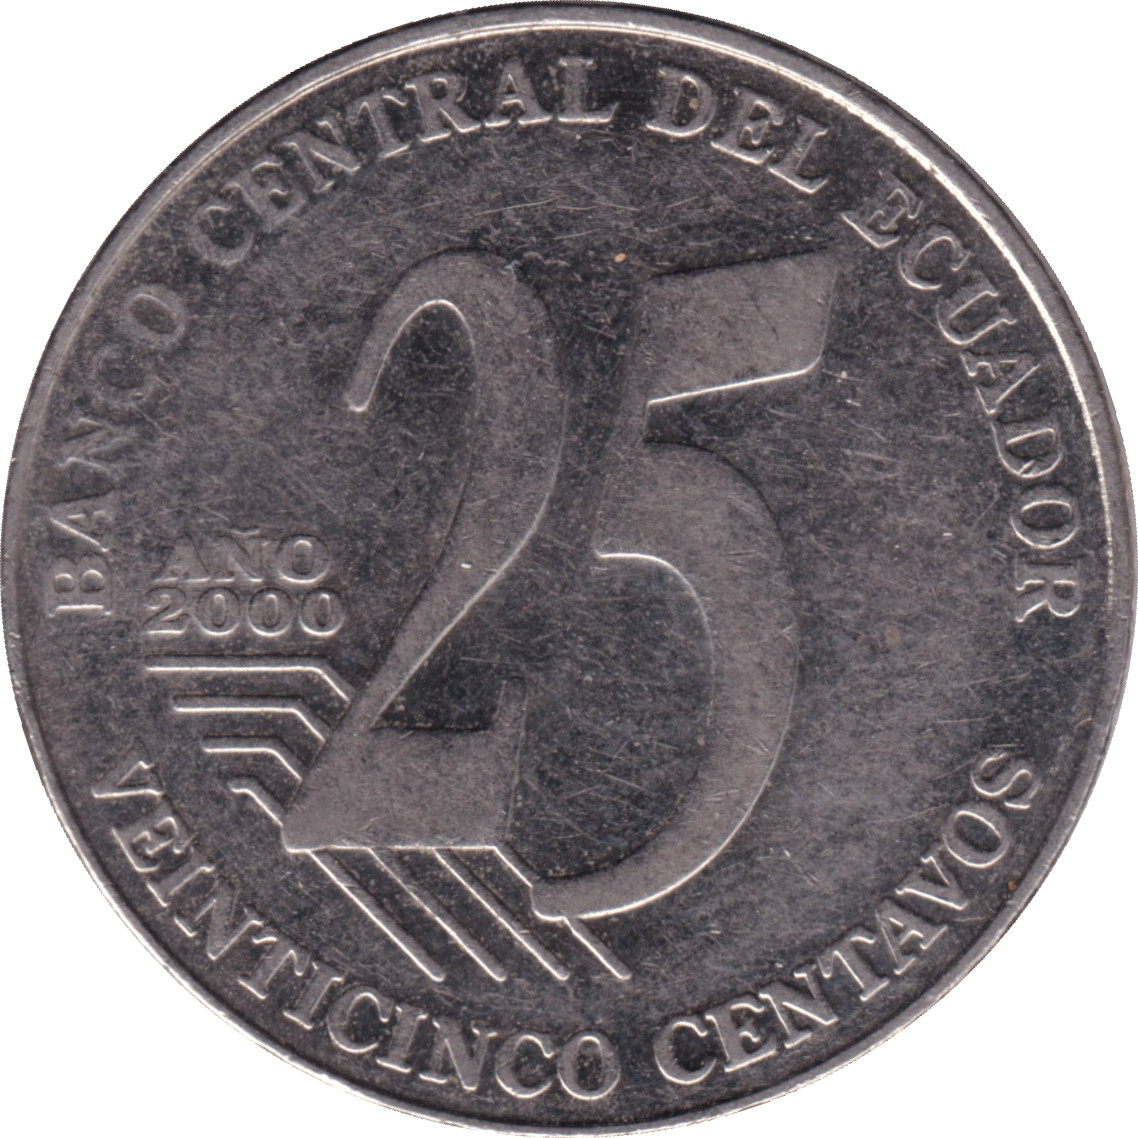 25 centavos - Jose Joaquin De Olmedo